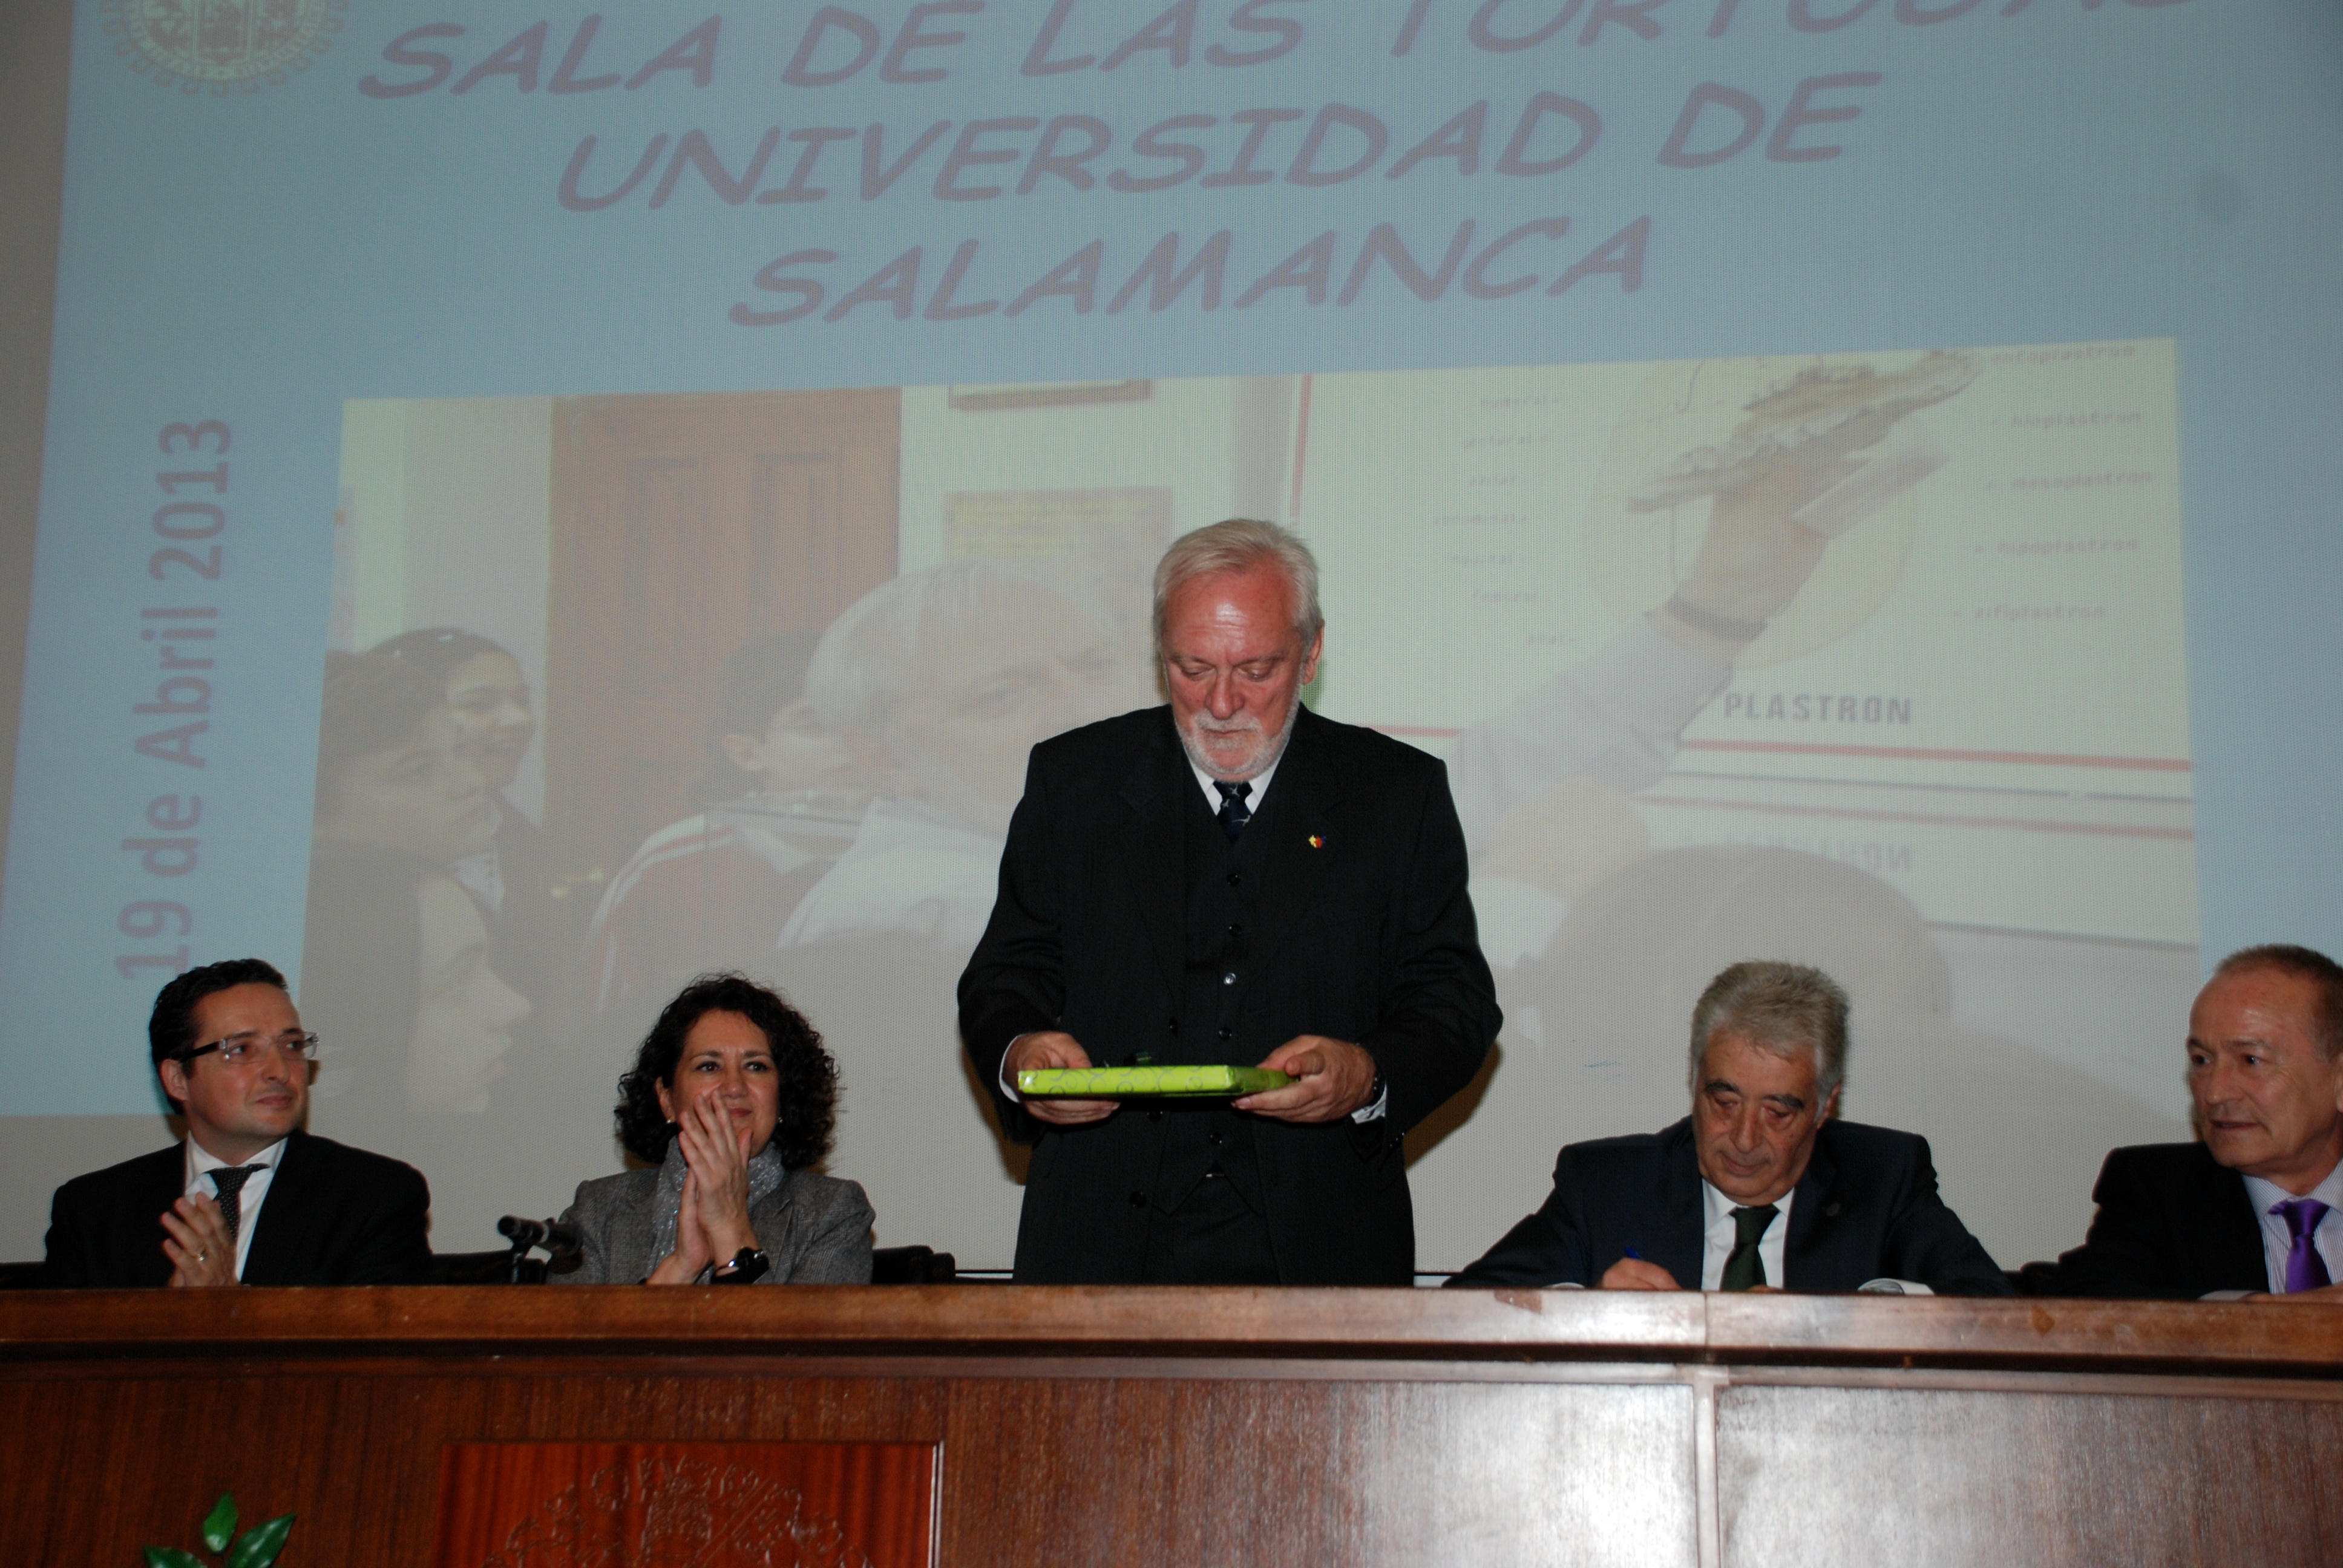 La Facultad de Ciencias de la Universidad de Salamanca acoge un acto oficial en conmemoración del XXV aniversario de la ‘Sala de las Tortugas’ y su fundador, Emiliano Jiménez